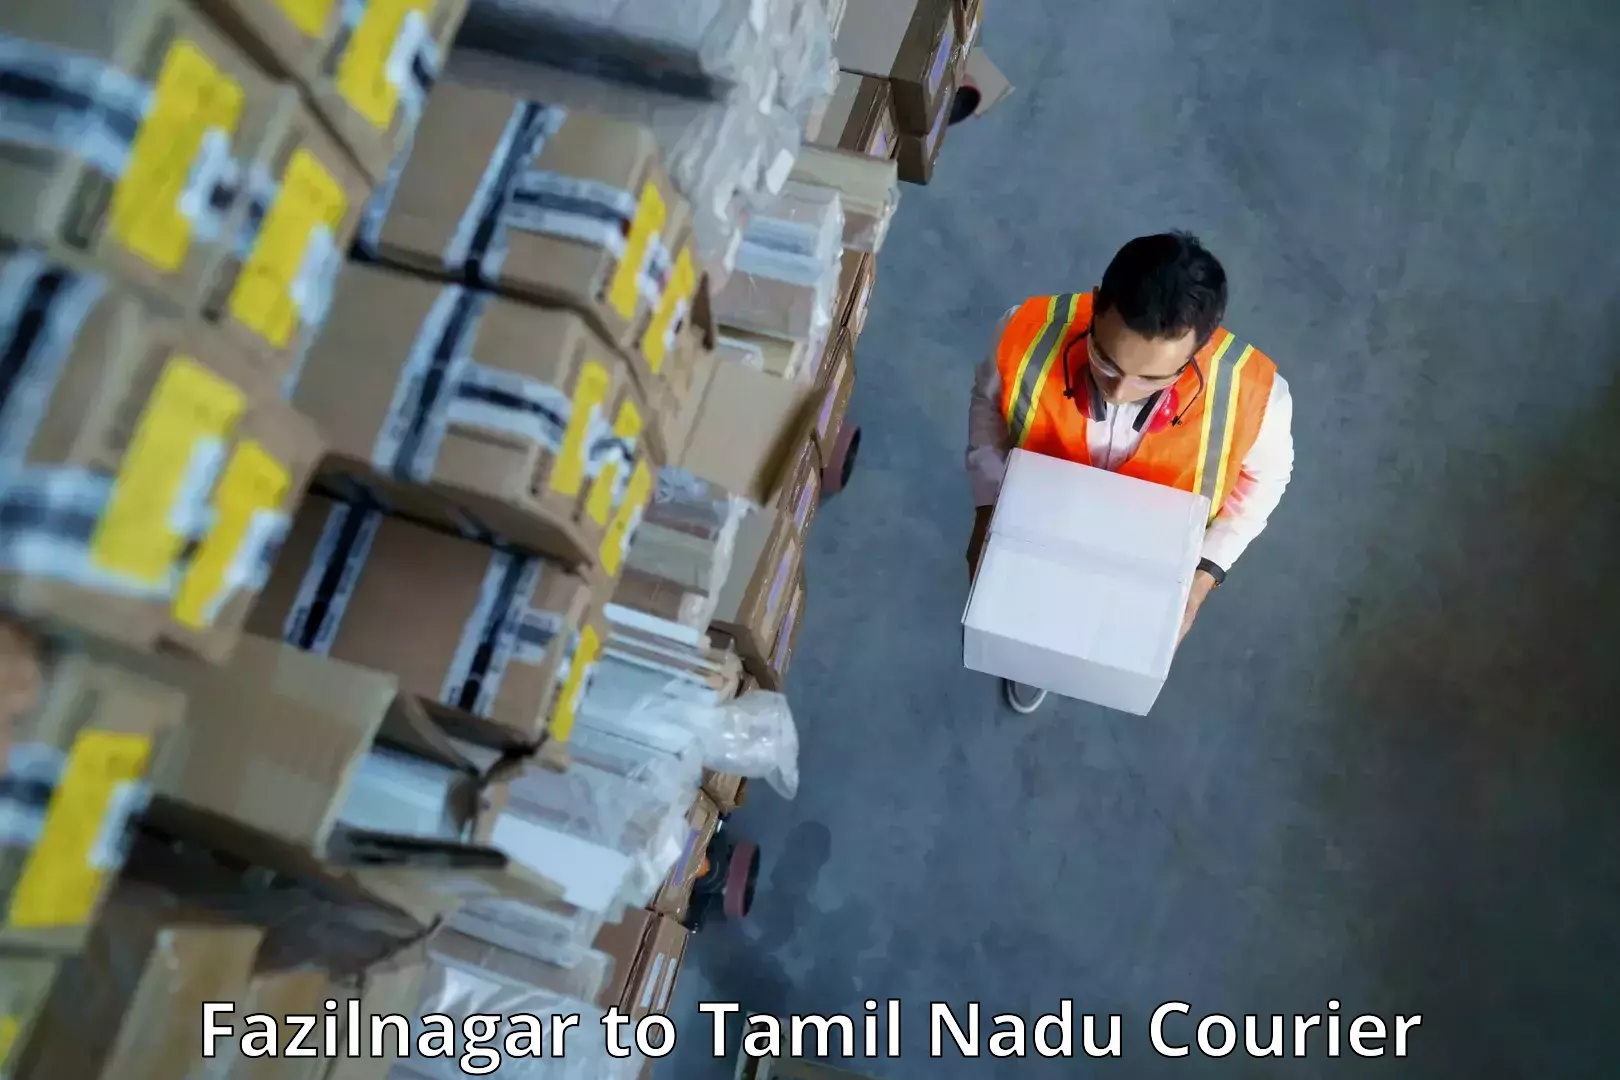 Personalized courier experiences Fazilnagar to Peikulam